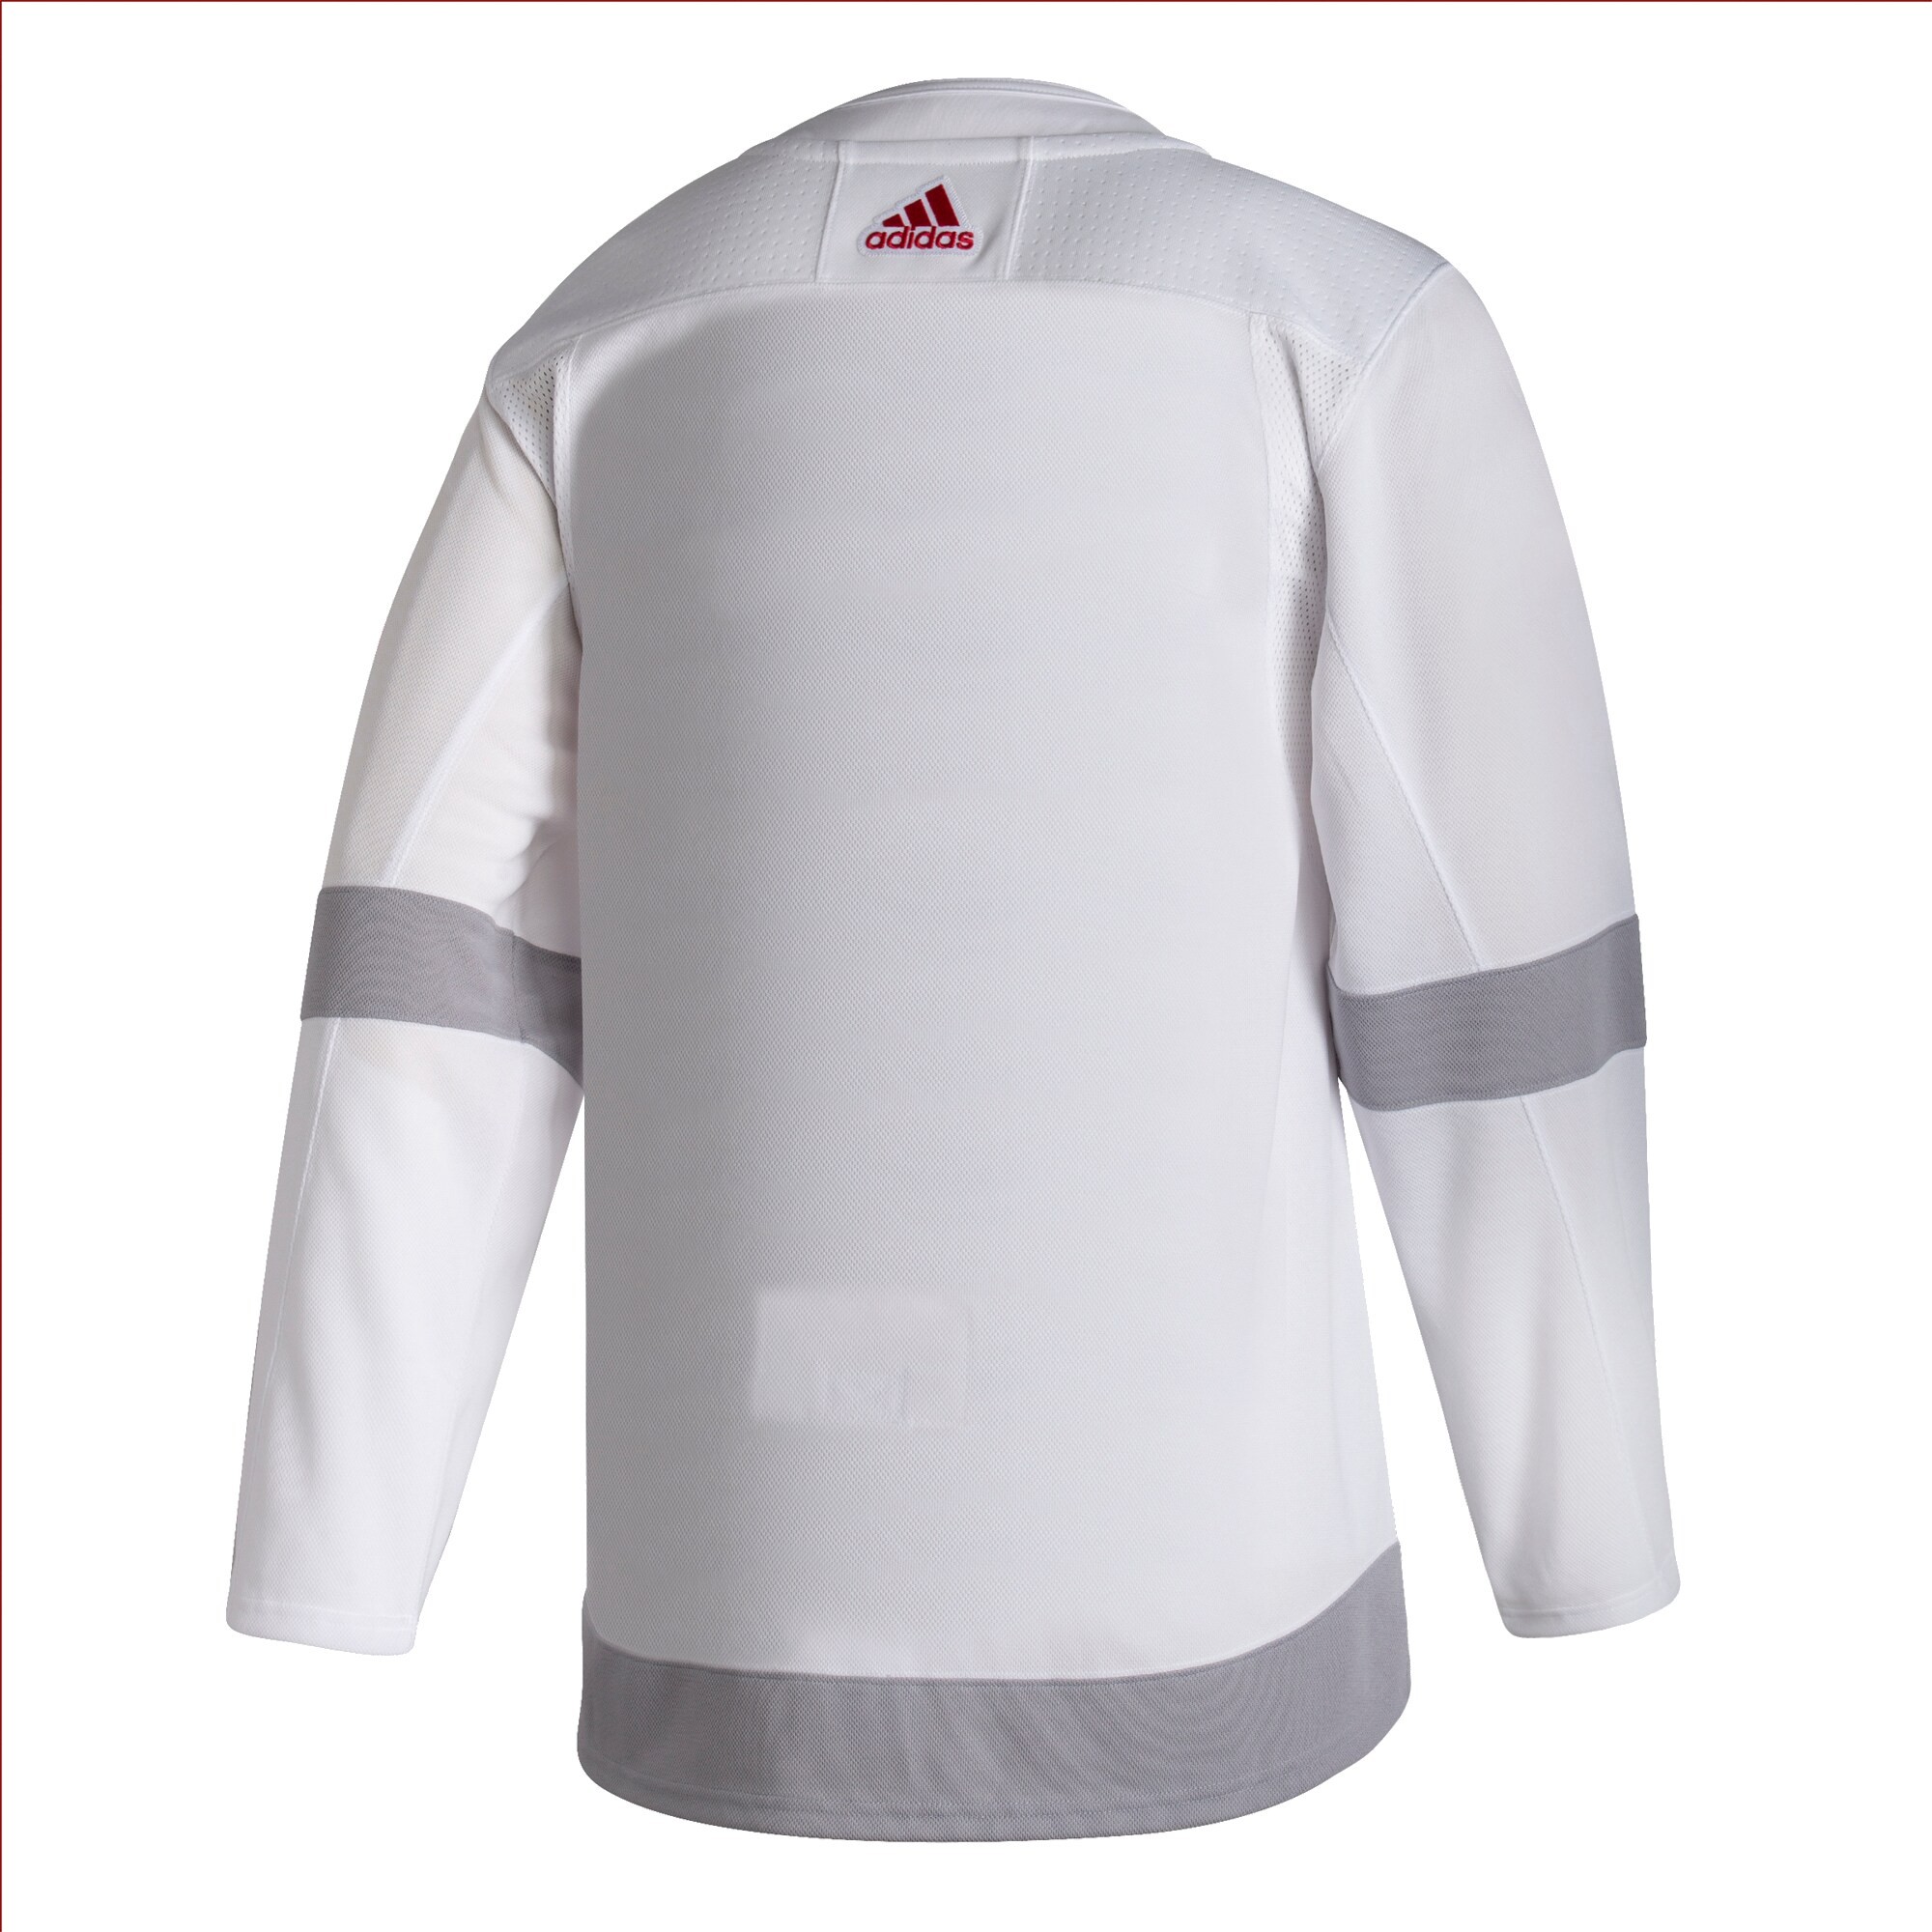 adidas Real Tr Jsy Football Jerseys - Grey (S)